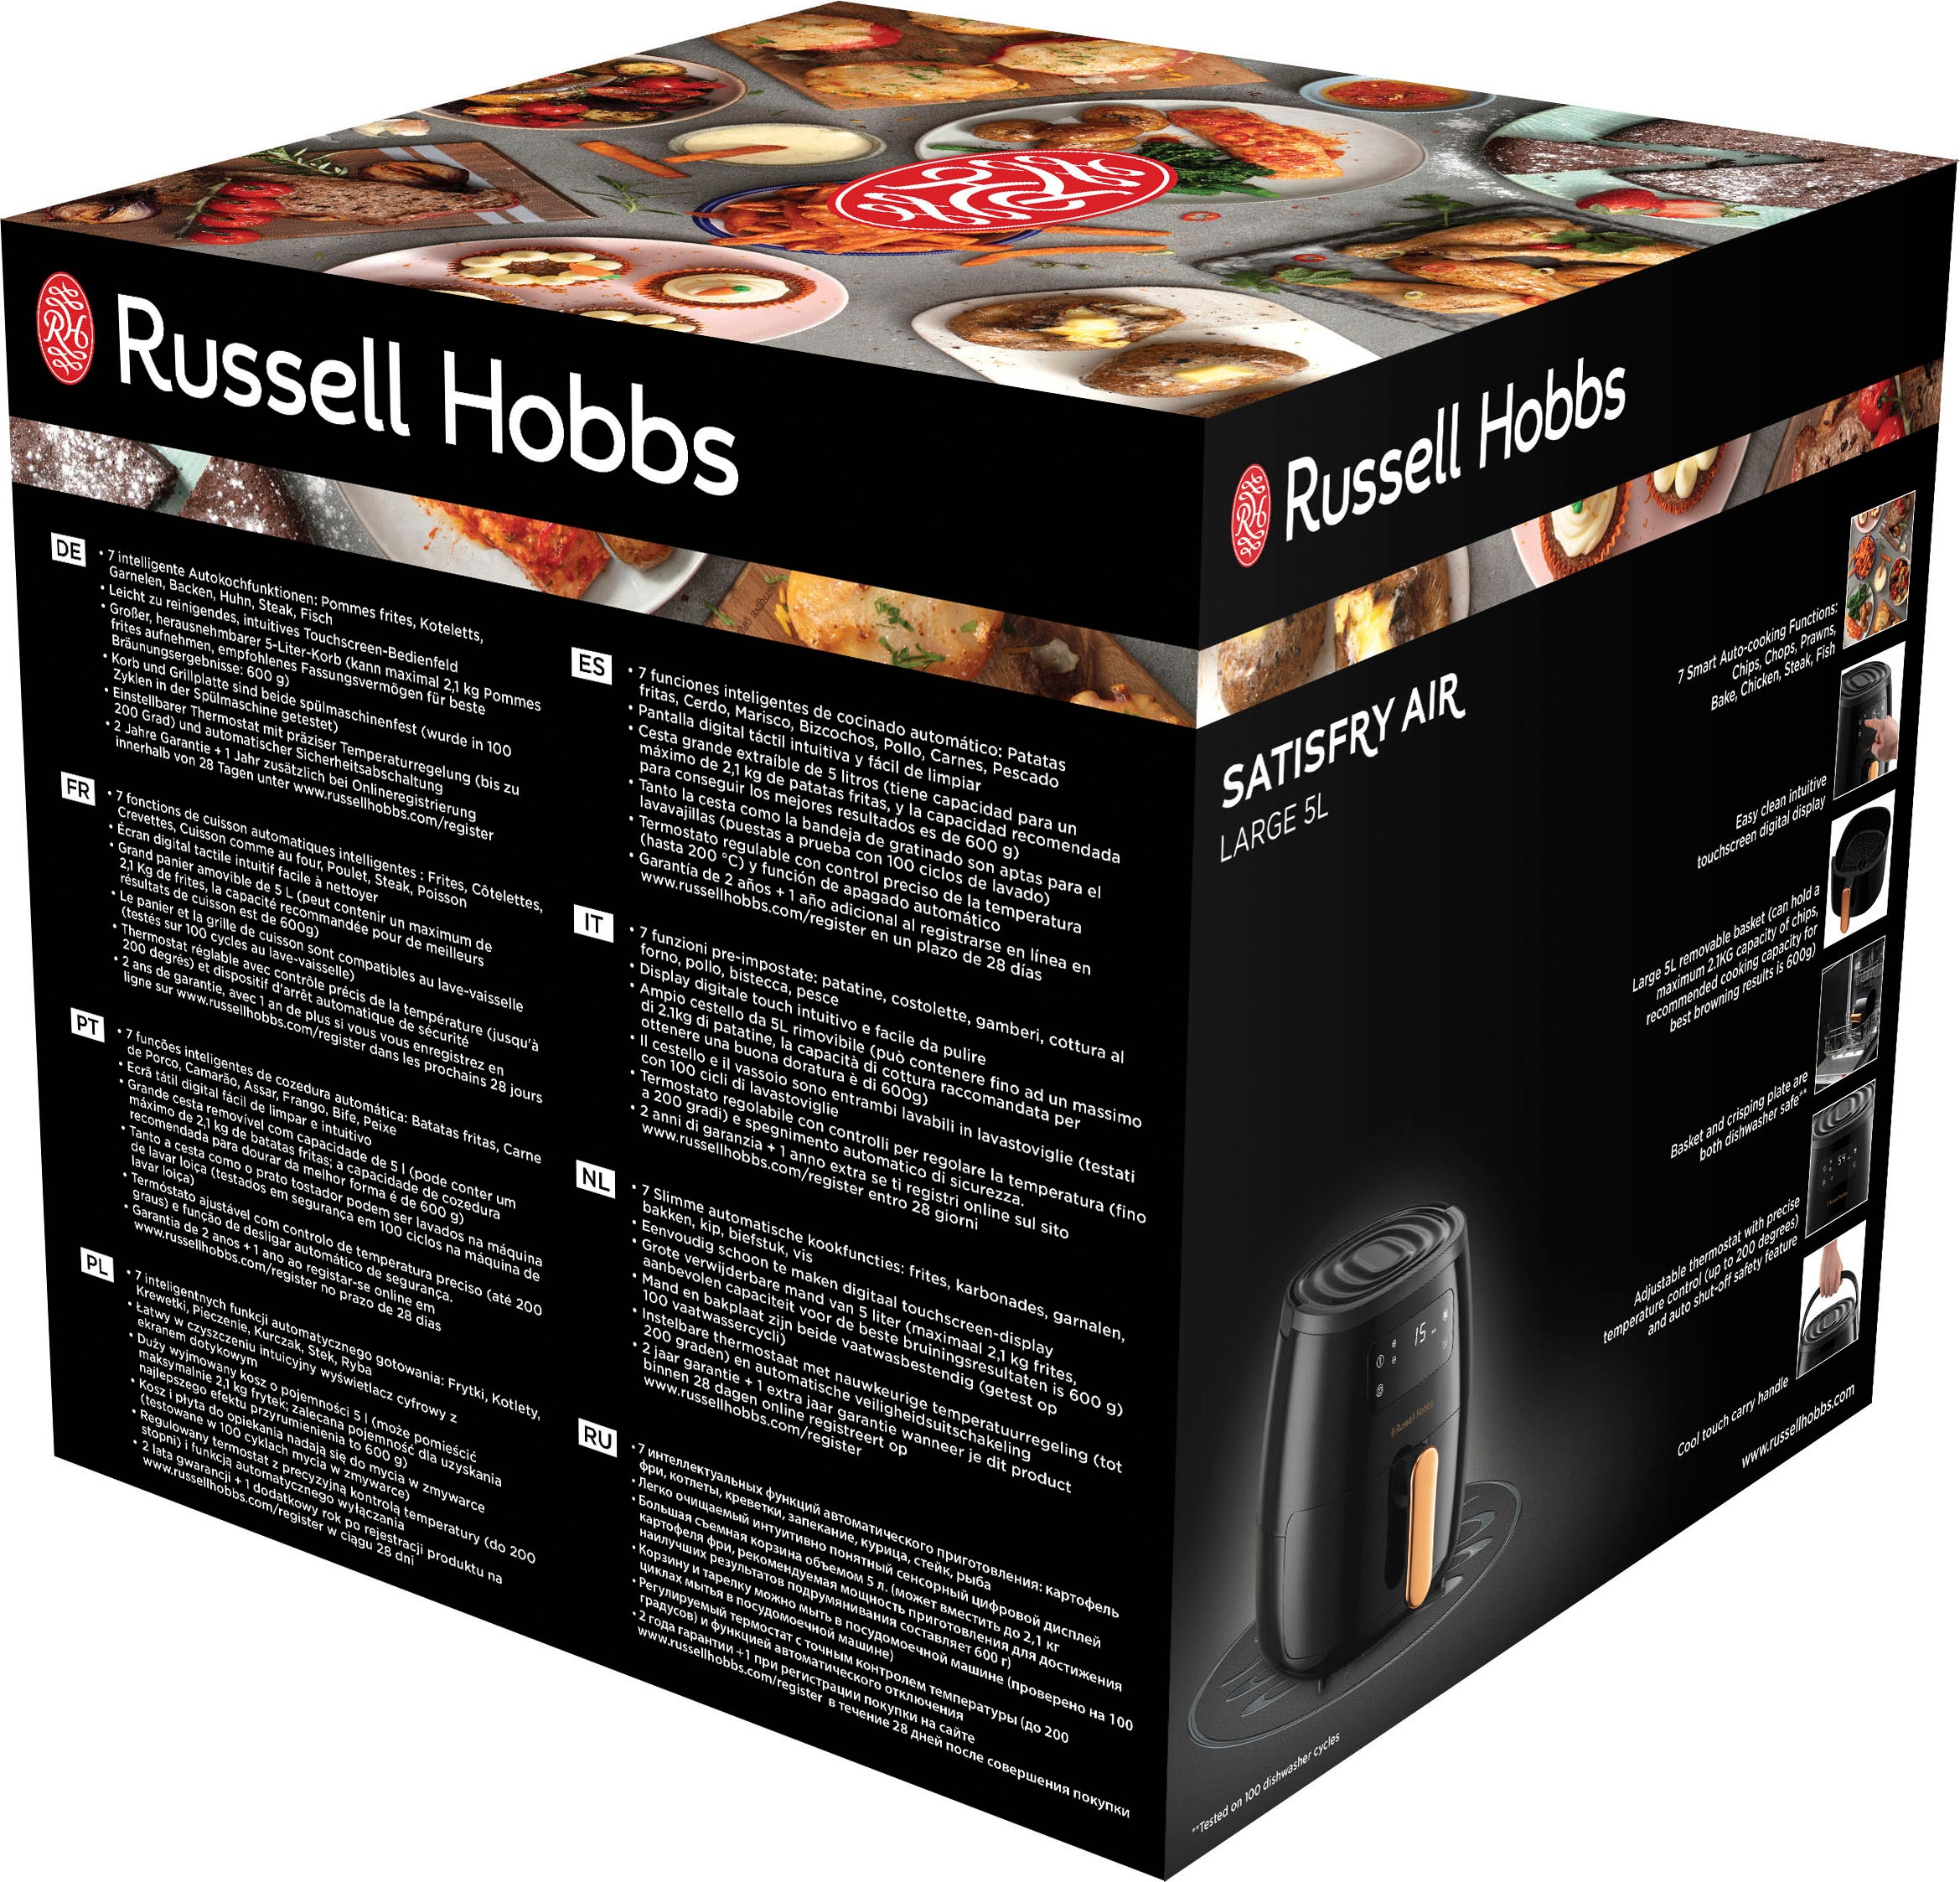 RUSSELL HOBBS Heißluftfritteuse Air groß 1650 26510-56«, l 5 5 W, kaufen - online Fassungsvermögen »SatisFry l